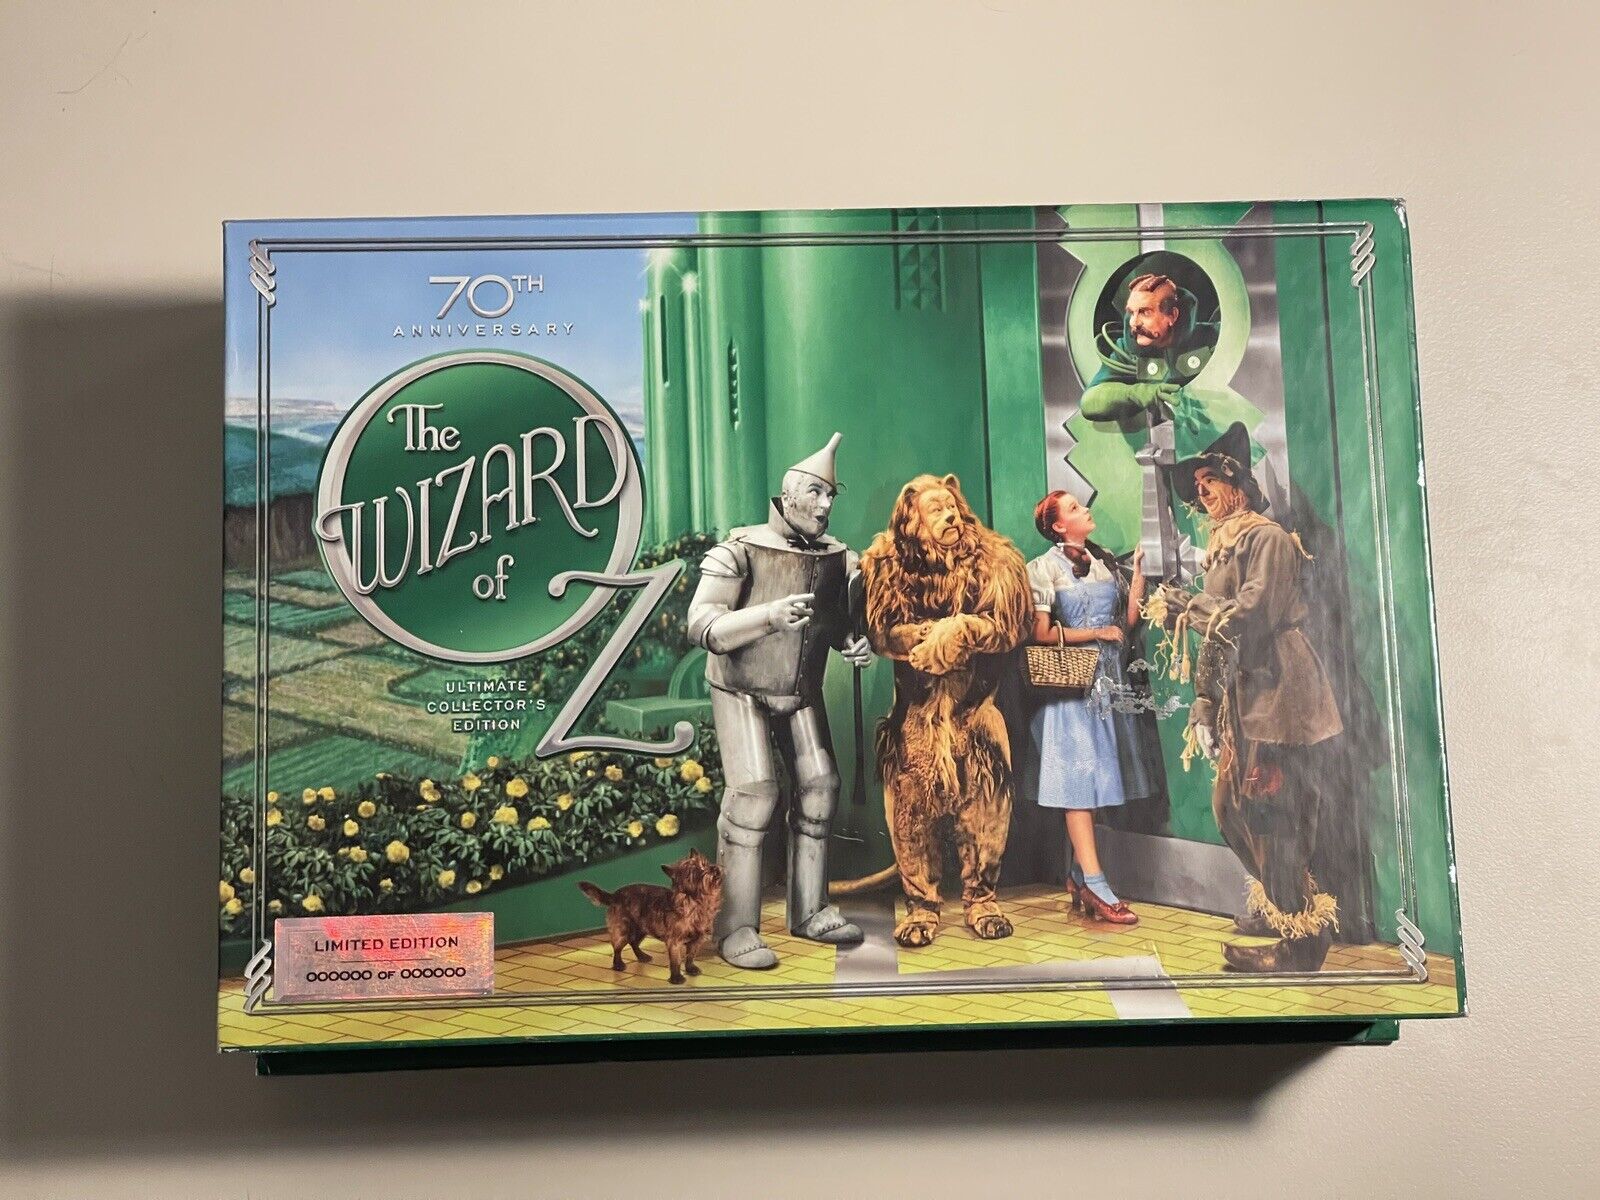 RARE: Pre-Production 70th Anniversary Wizard Of Oz Dvd/blu-ray Collectors